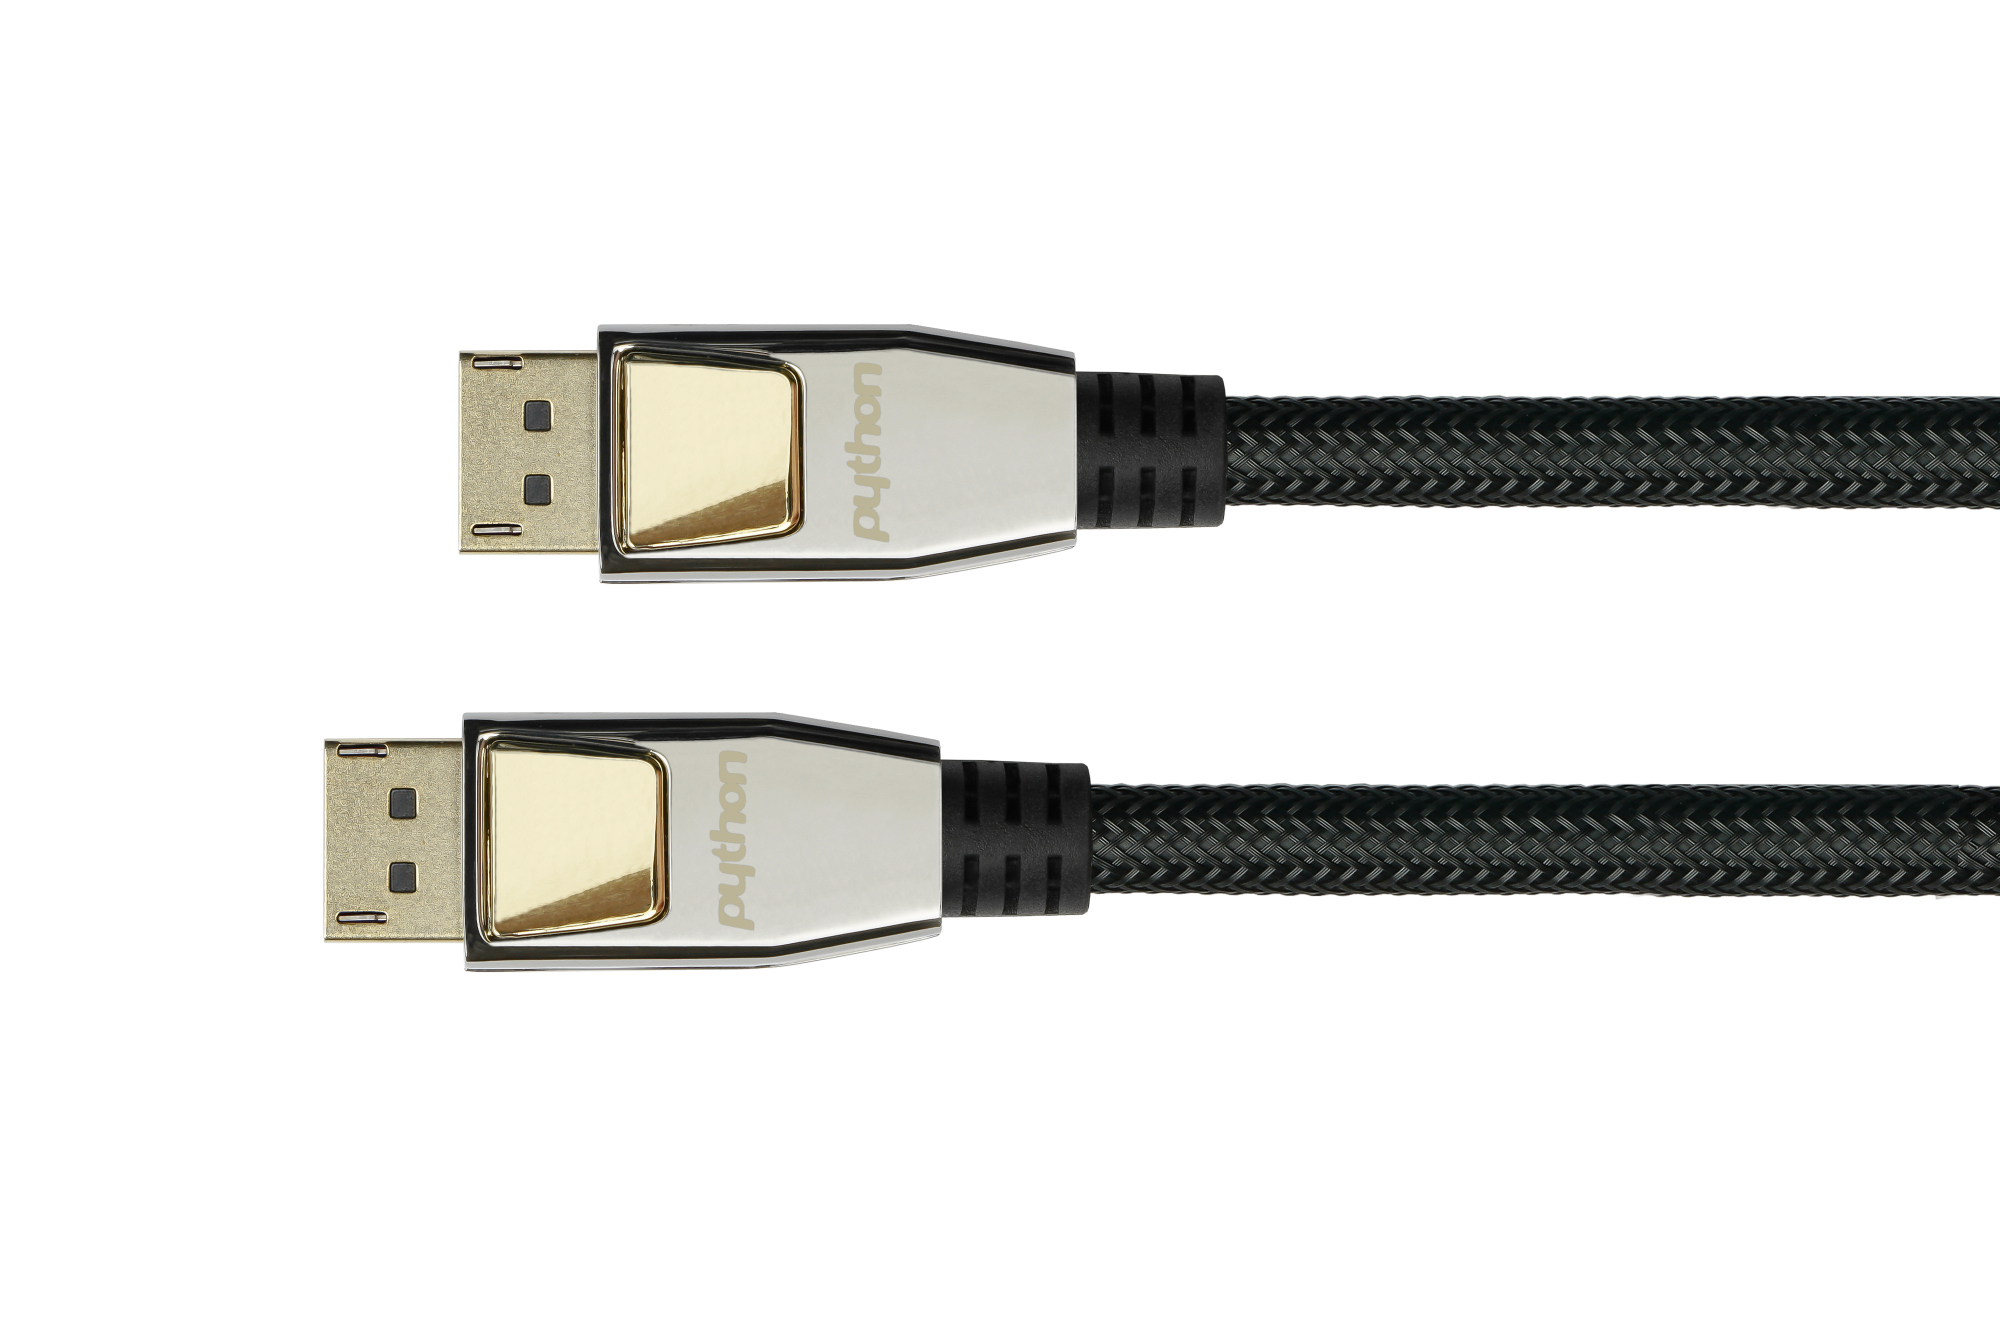 Anschlusskabel DisplayPort 1.2, 4K / UHD @60Hz, Vollmetallstecker, OFC, Nylongeflecht schwarz, 10m